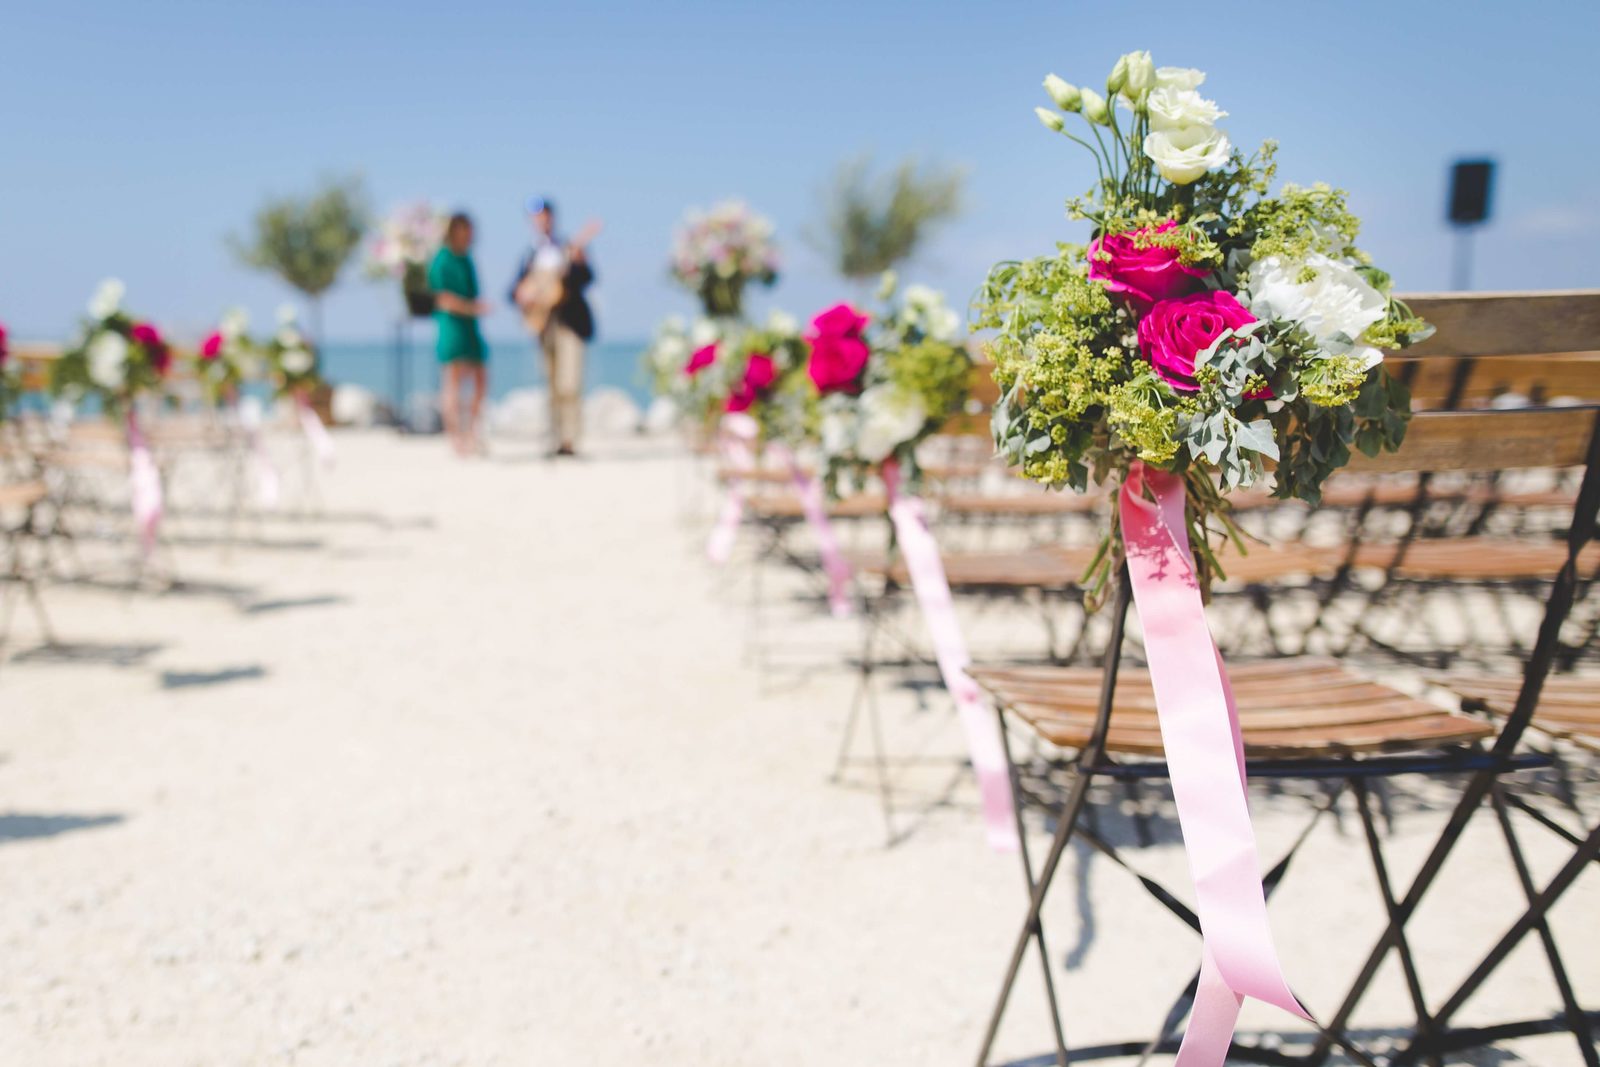 Una boda en Bonaire: ¿quién no quiere casarse en un lugar tan grandioso como este? ¡Declara tu amor en la playa y baila con tu pareja!
